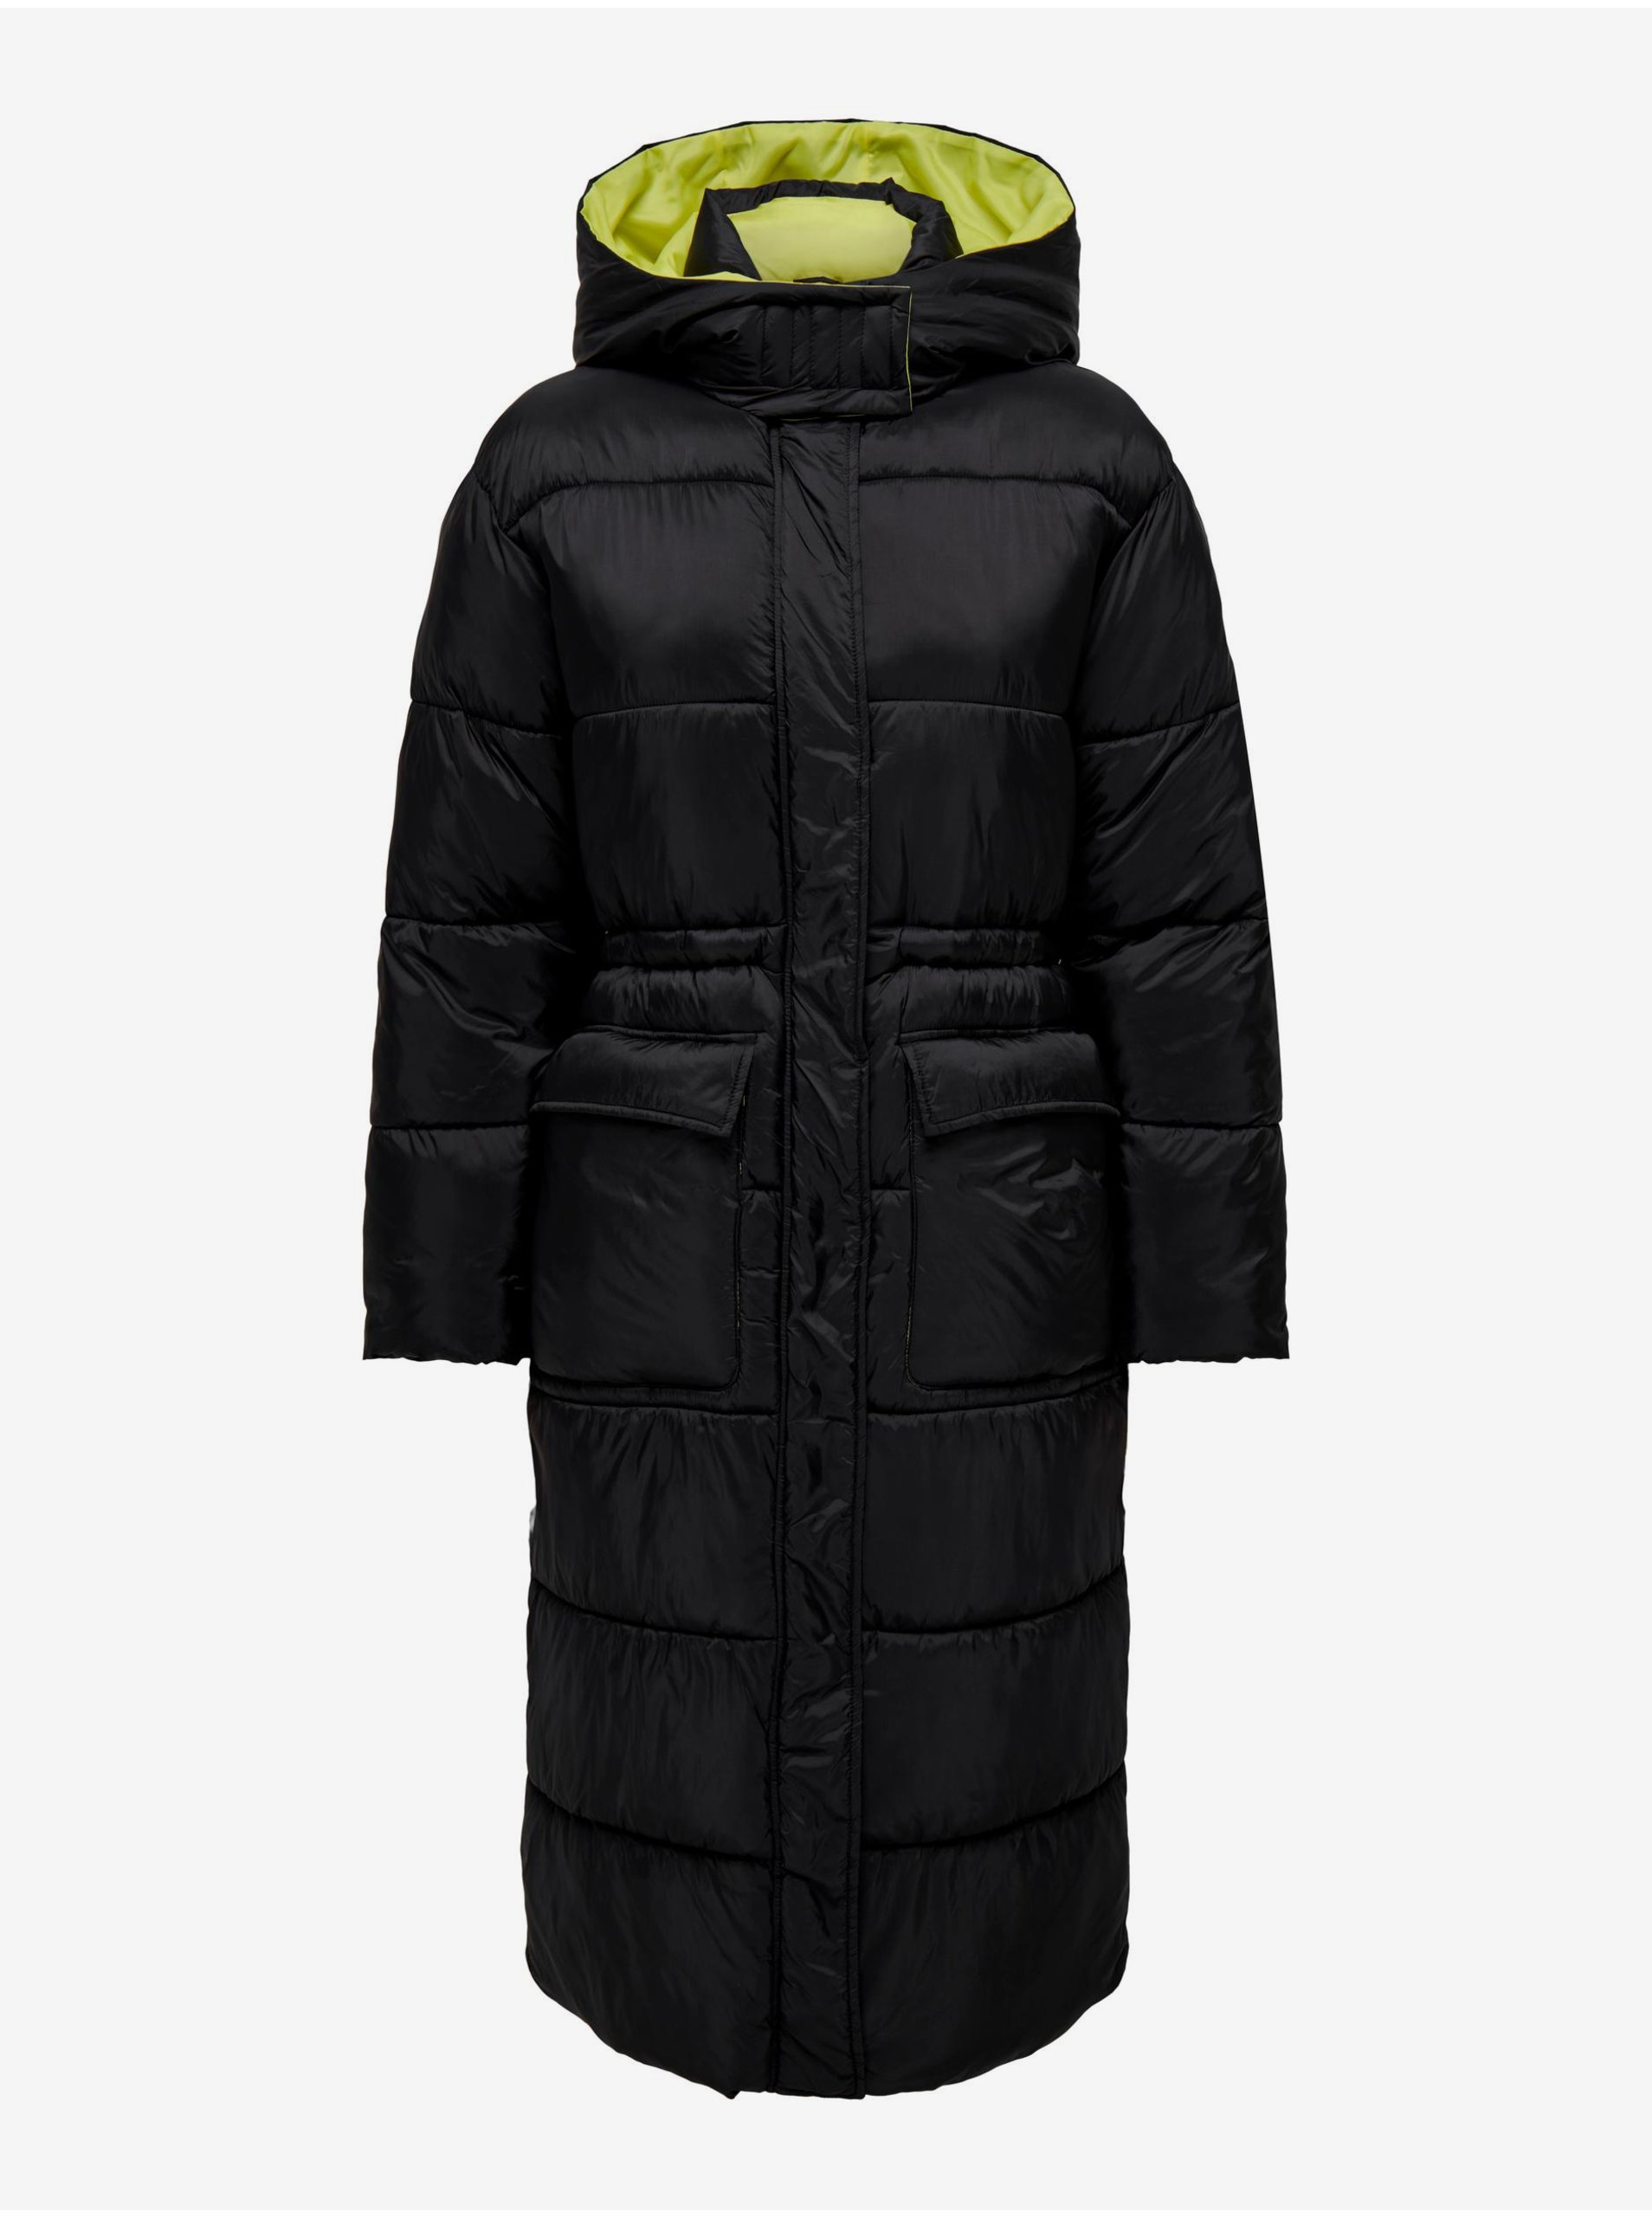 Lacno Čierny dámsky prešívaný zimný kabát s kapucňou ONLY Puk